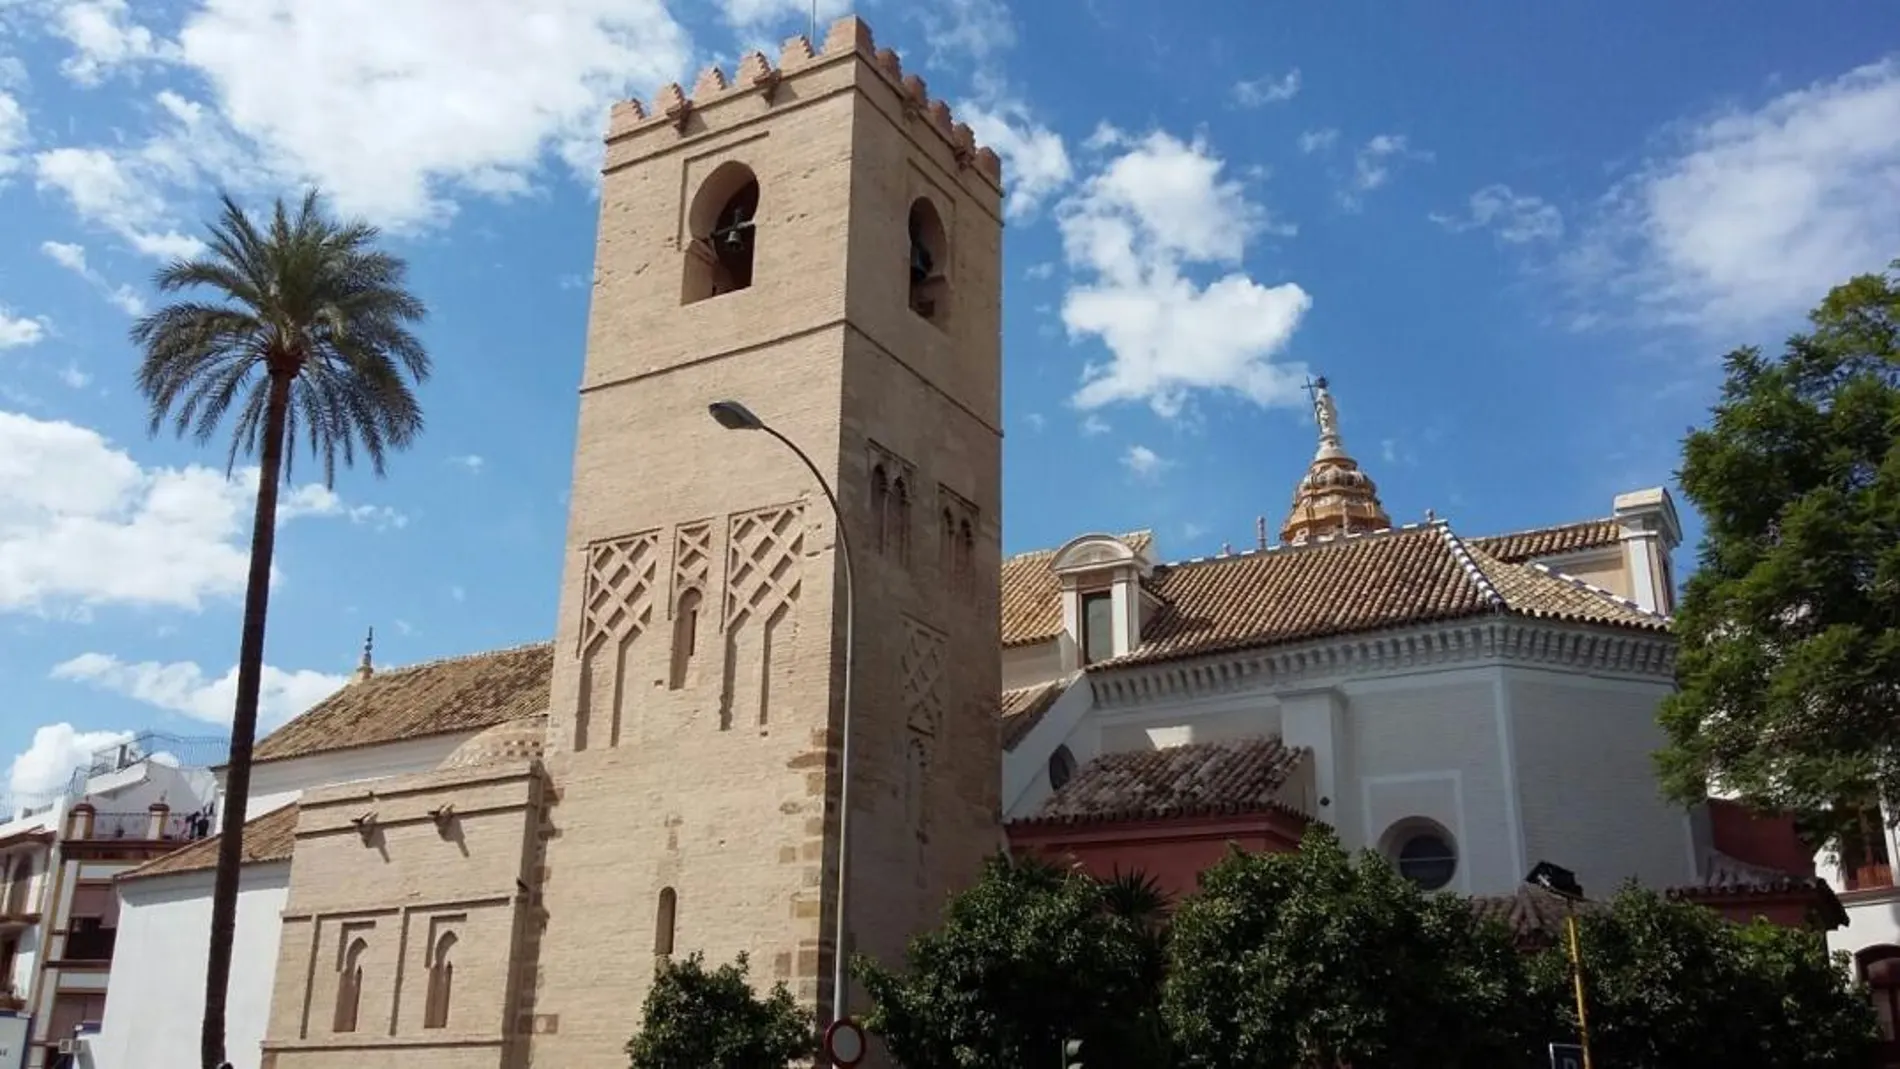 La iglesia sevillana de Santa Catalina prevé reabrir al público el 25 de noviembre, tras 14 años cerrada